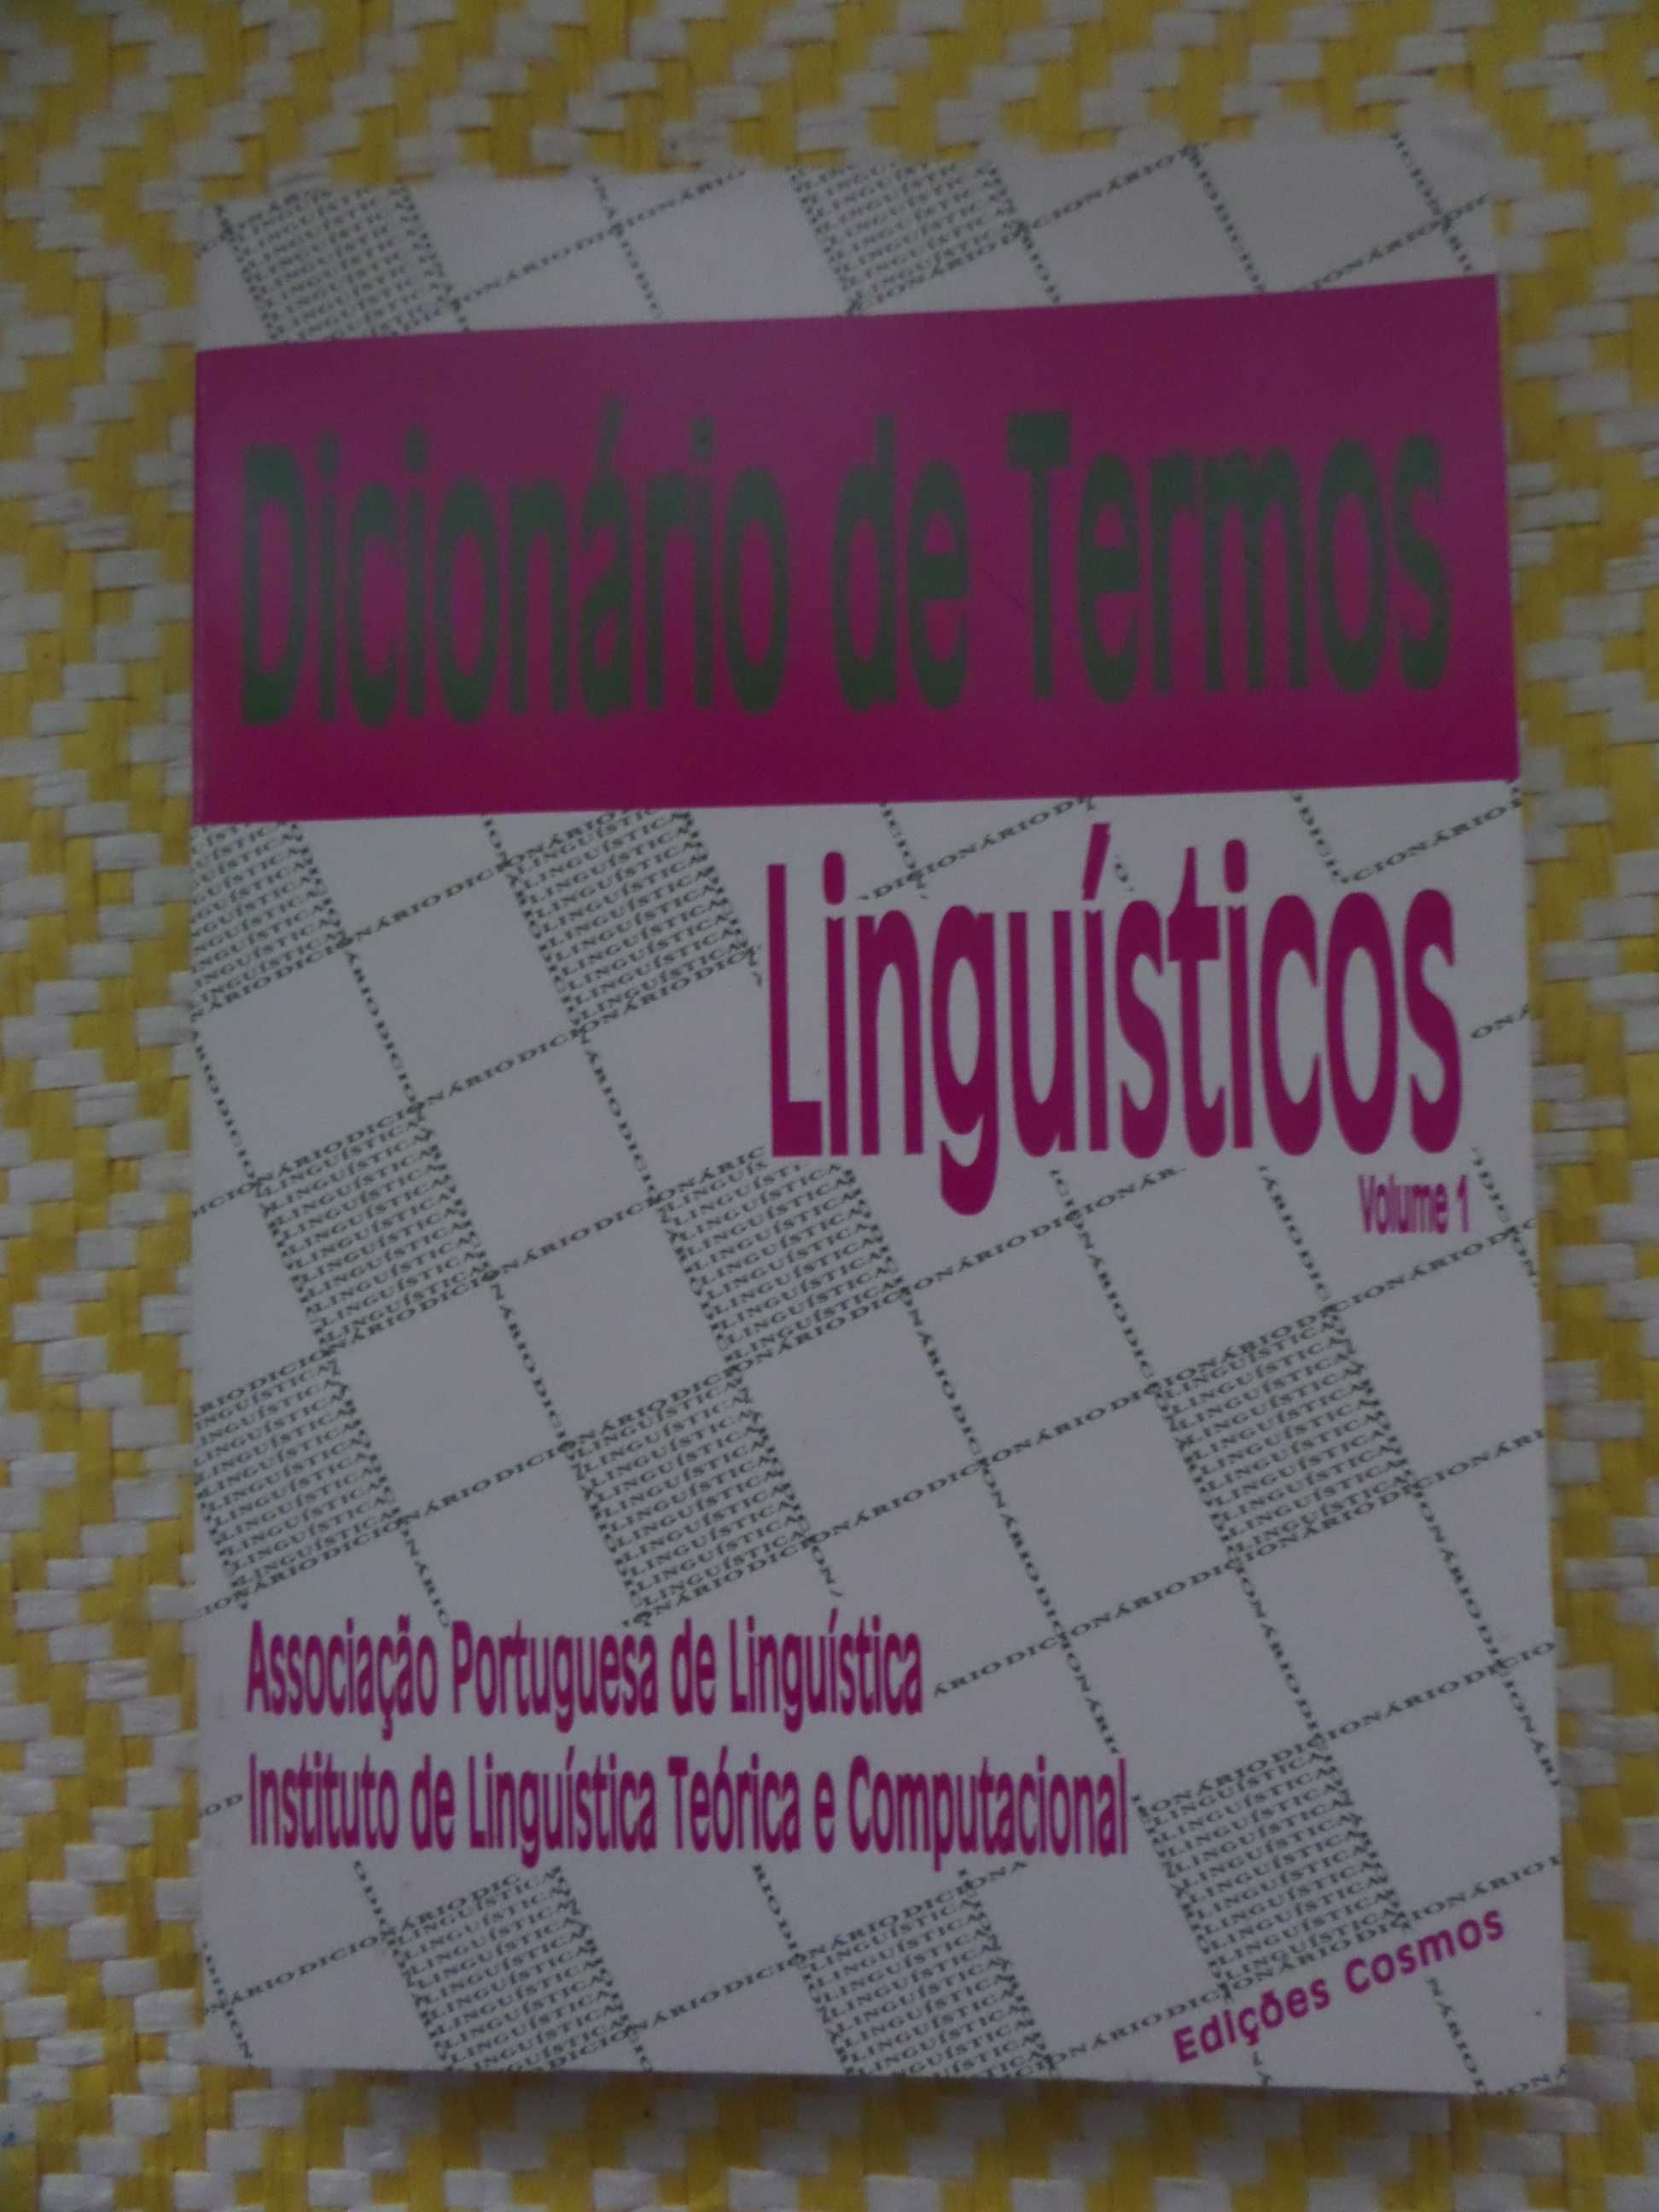 Dicionário de termos linguísticos – Vol. 1 Ass Portug. de Linguística,